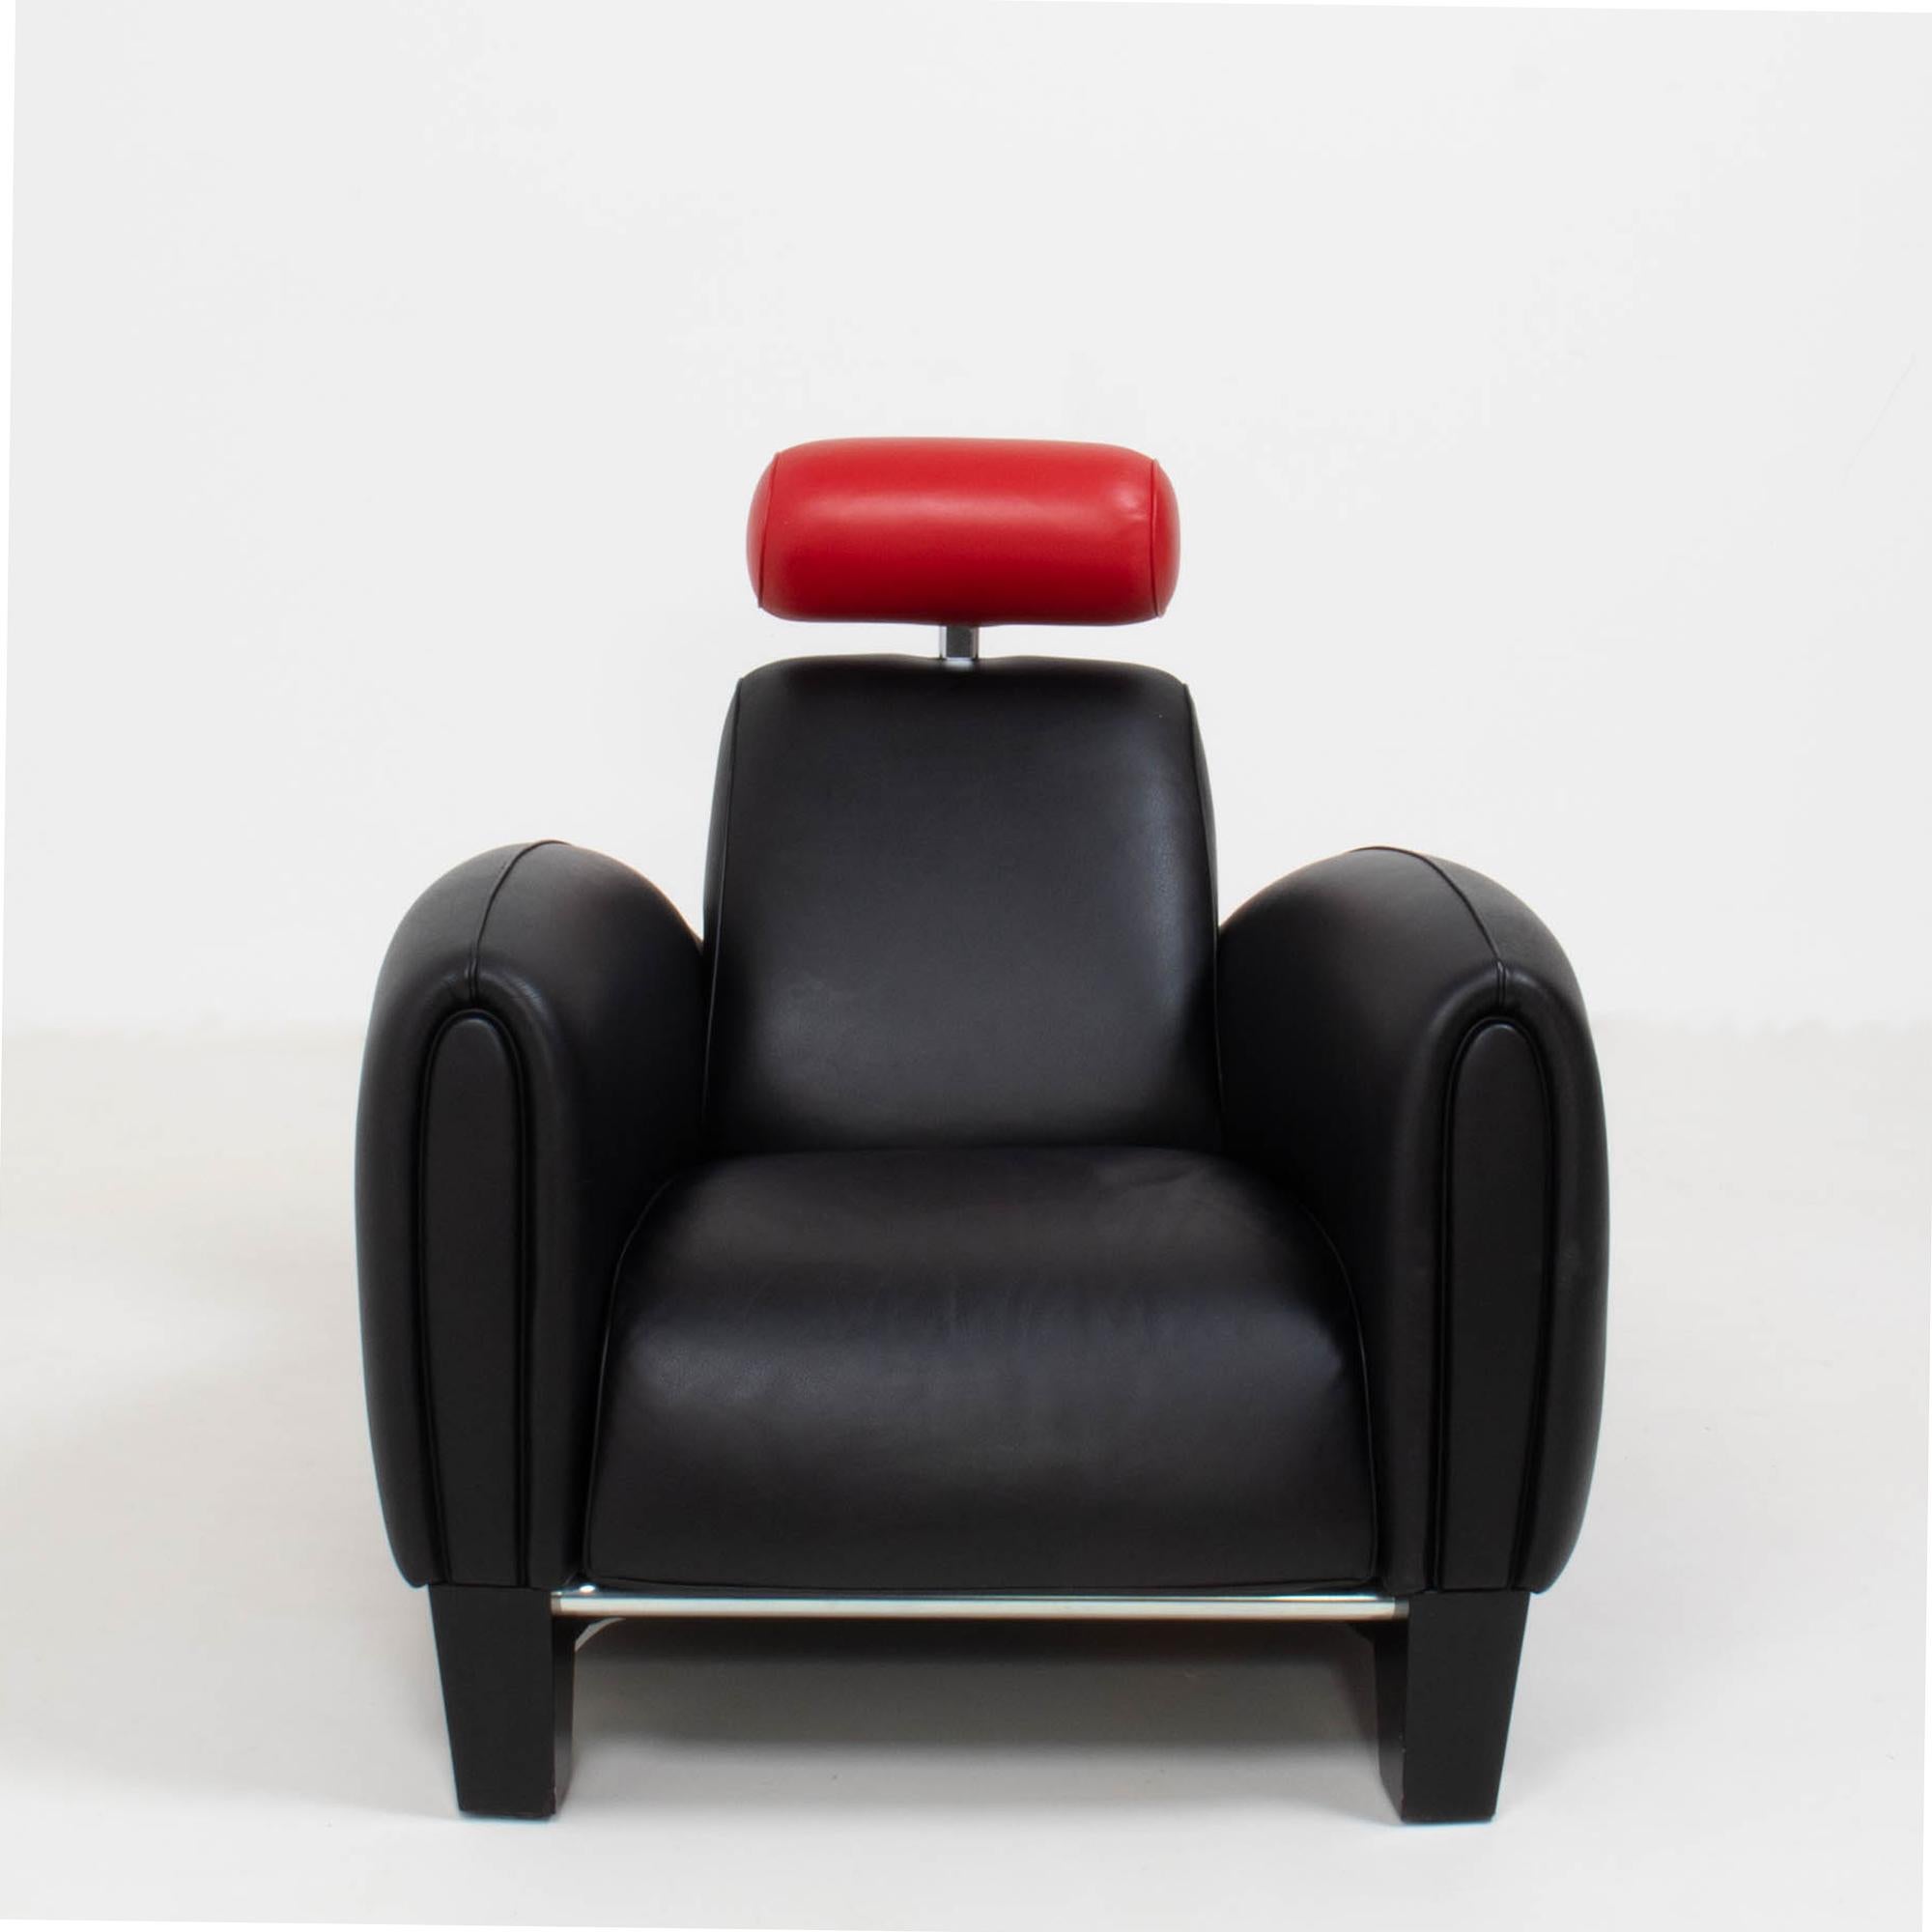 Der von Franz Romero für die Schweizer Möbelmarke De Sede entworfene Sessel DS-57 ist ein kühnes Designerstück.

Der Sessel, der an einen Rennwagen aus den 1930er Jahren erinnert, hat eine aerodynamische Struktur, die ein perfektes Gleichgewicht